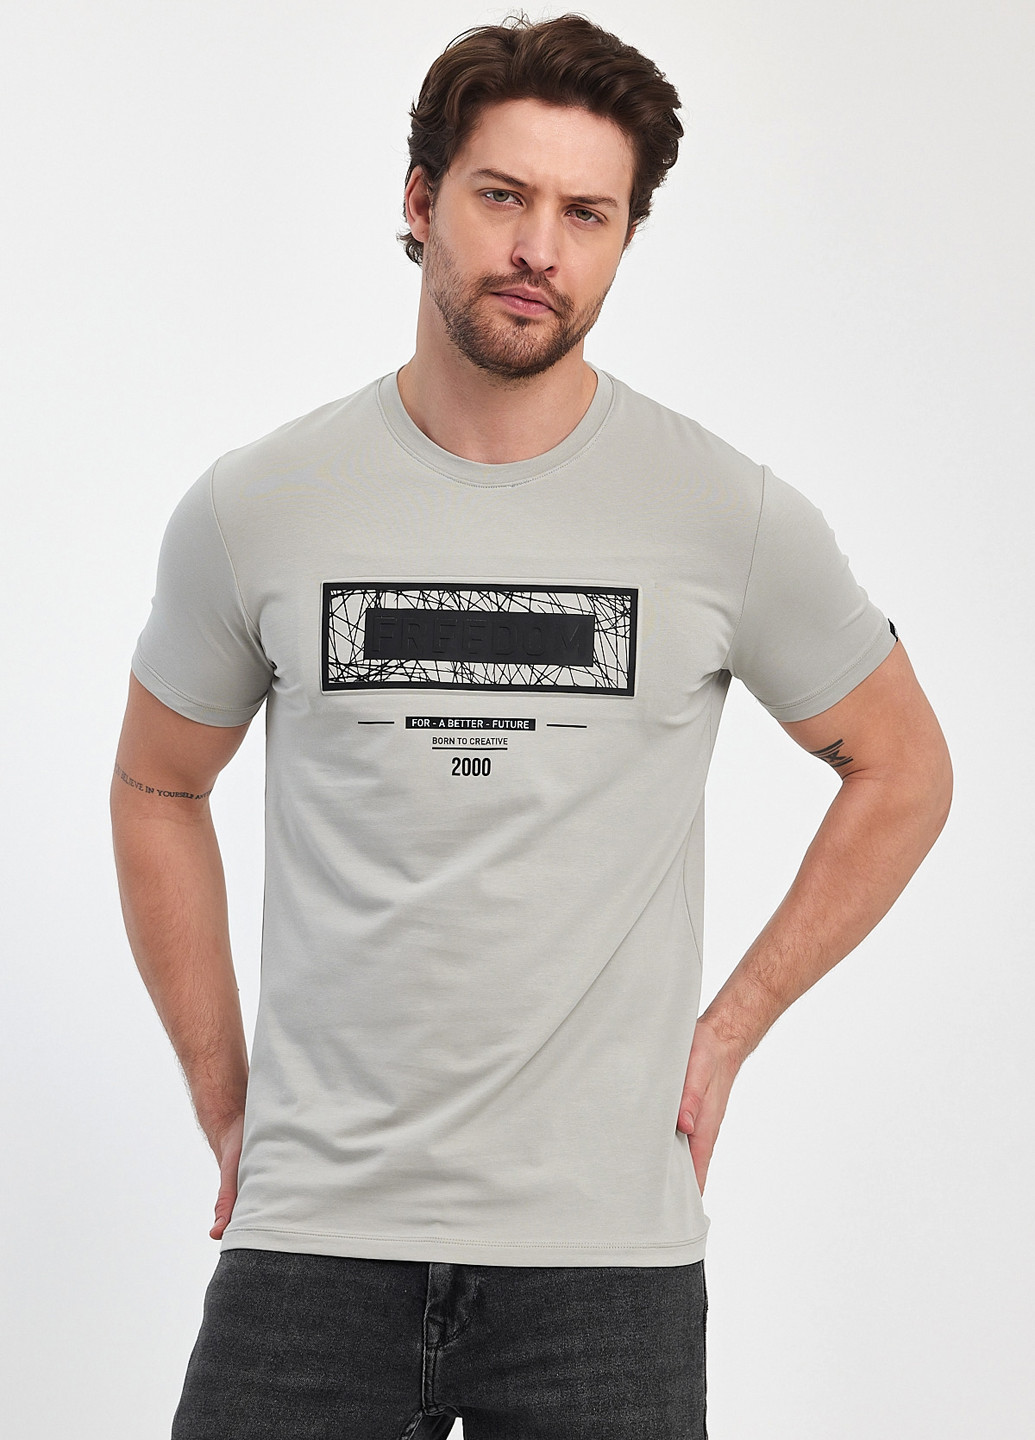 Світло-сіра футболка Trend Collection